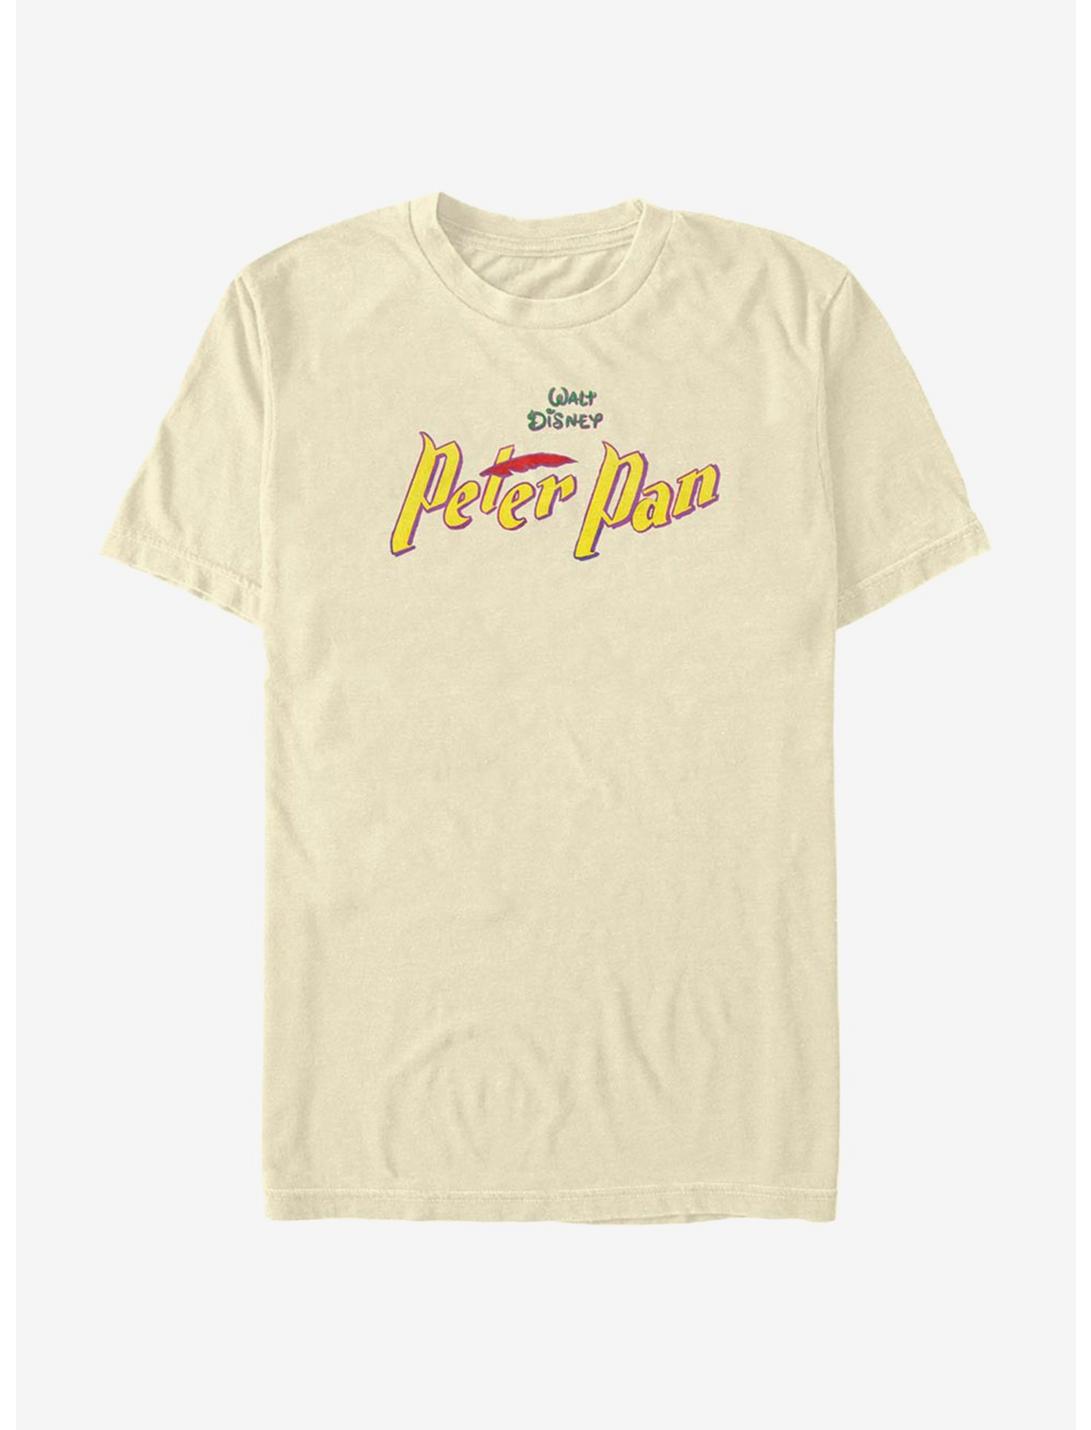 Disney Peter Pan Peterpan Color Logo T-Shirt, NATURAL, hi-res